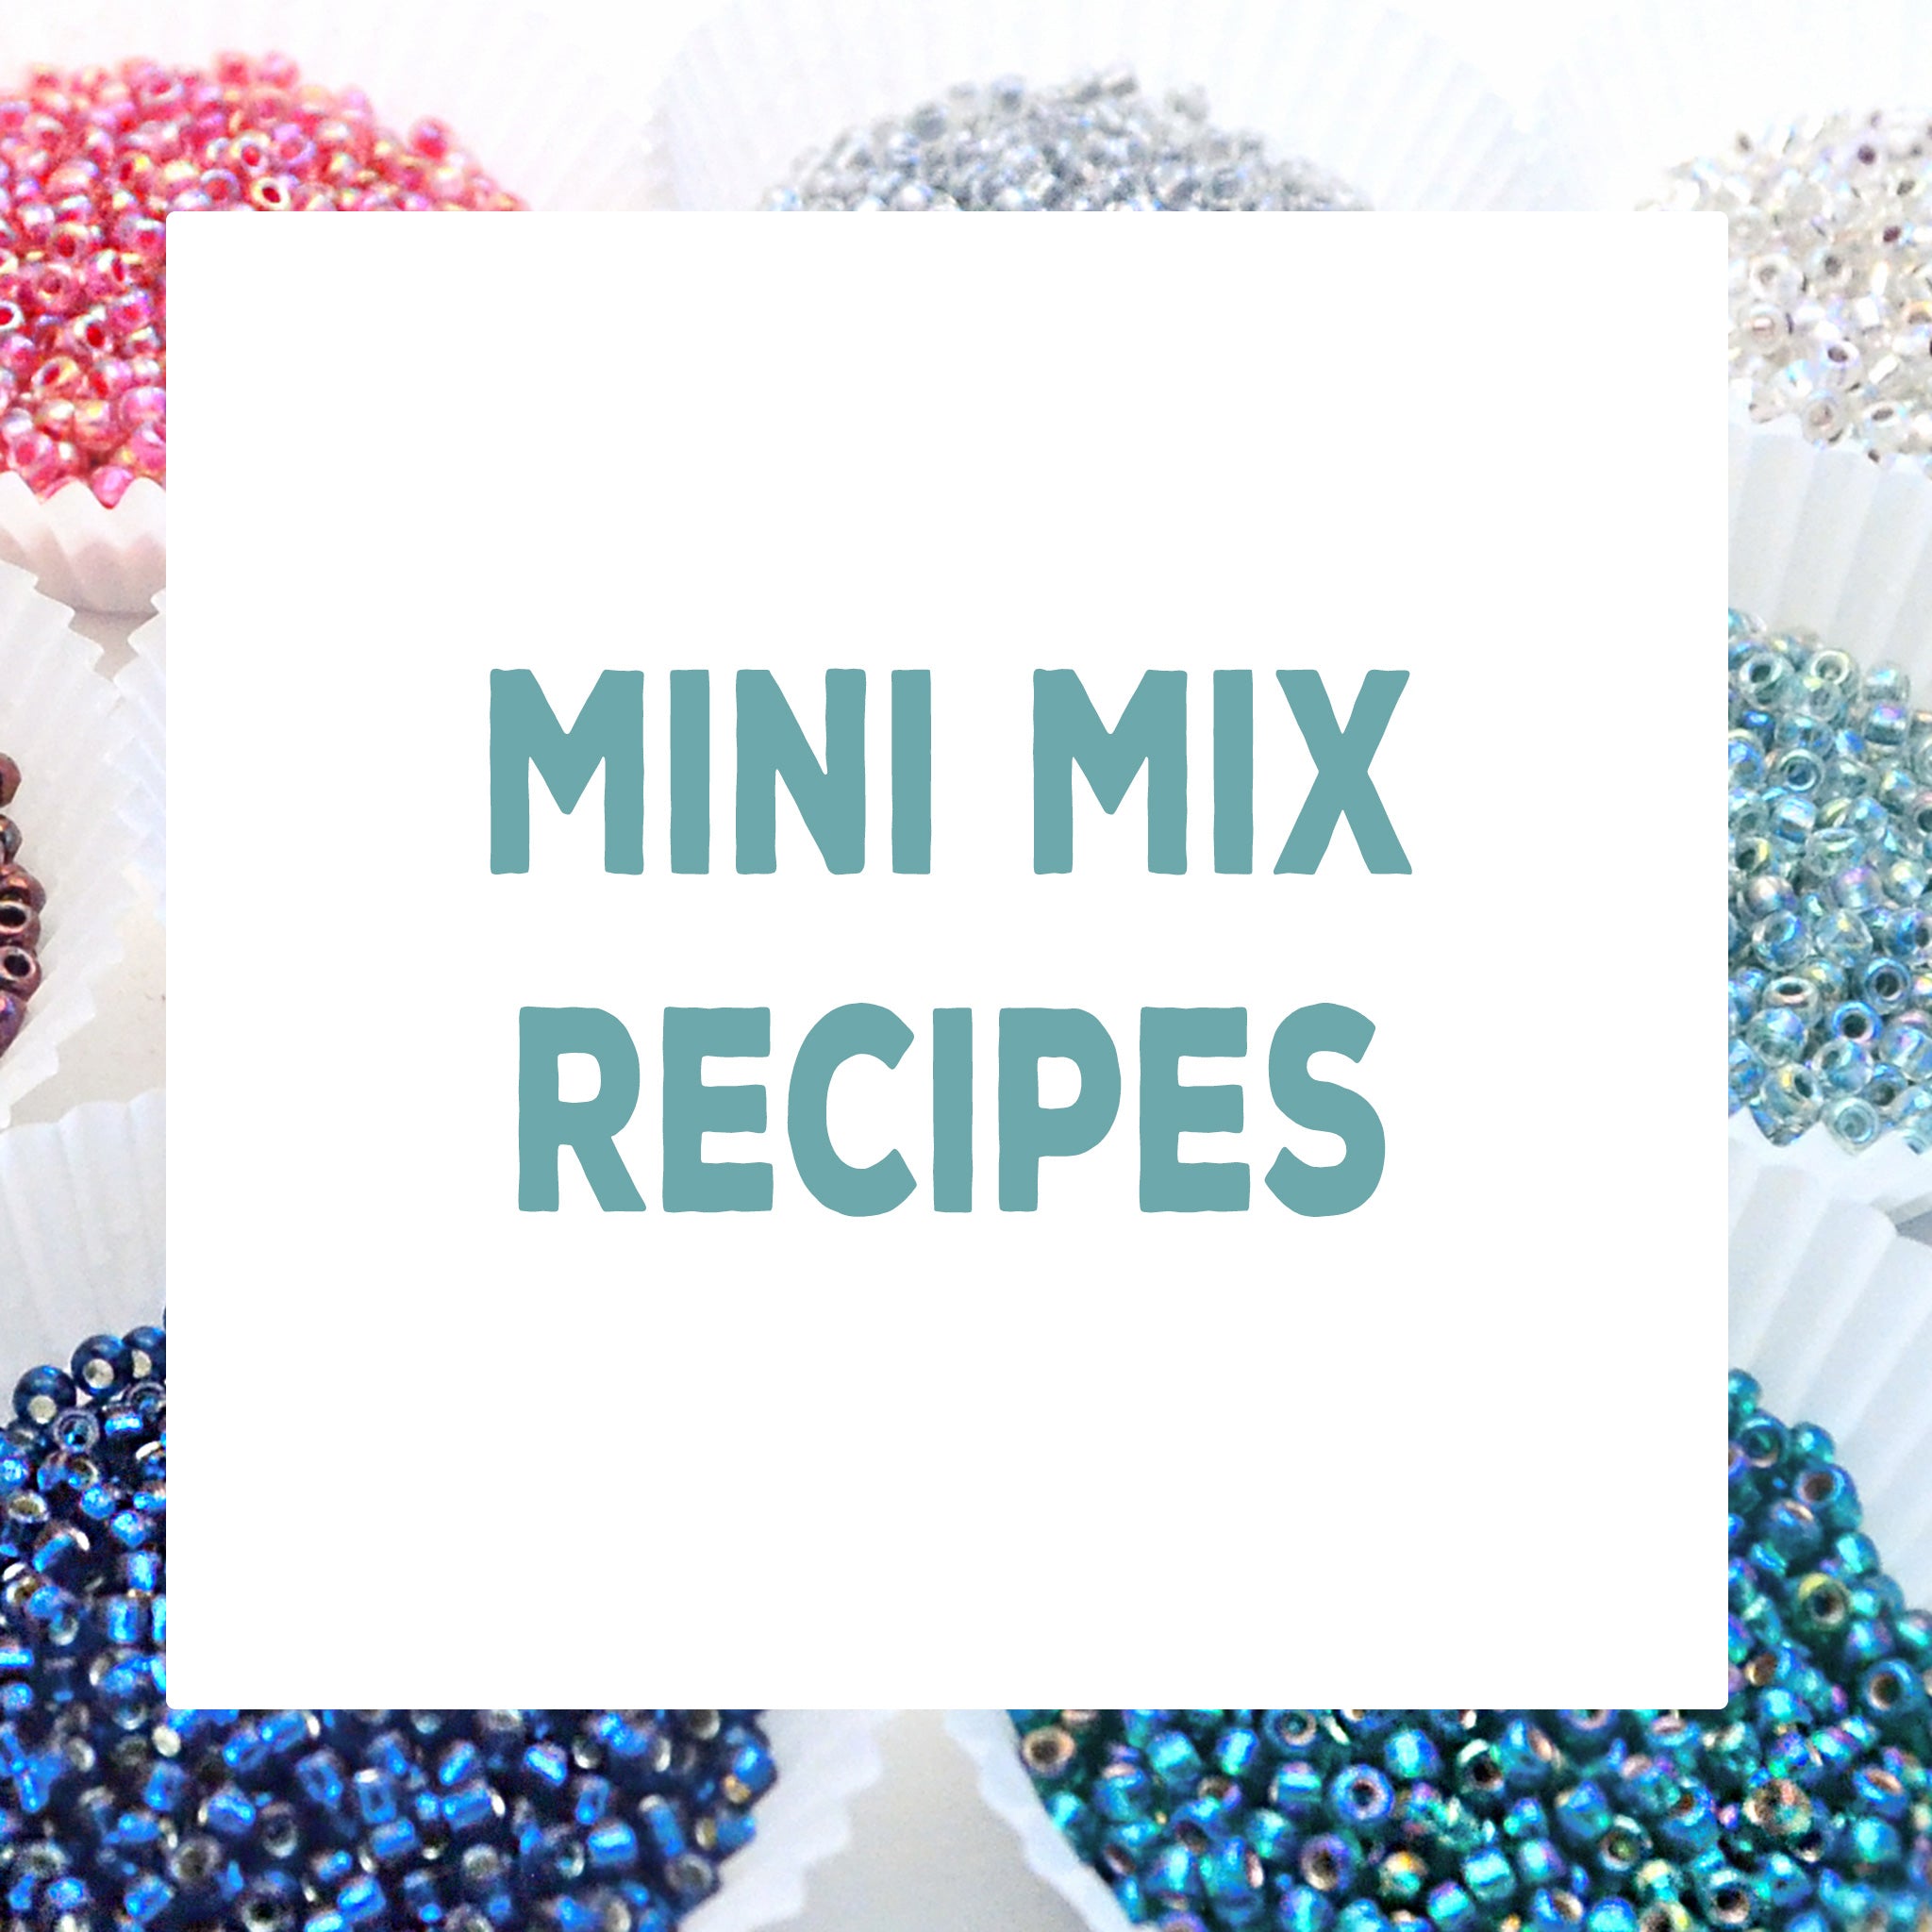 Mini Mix Recipes